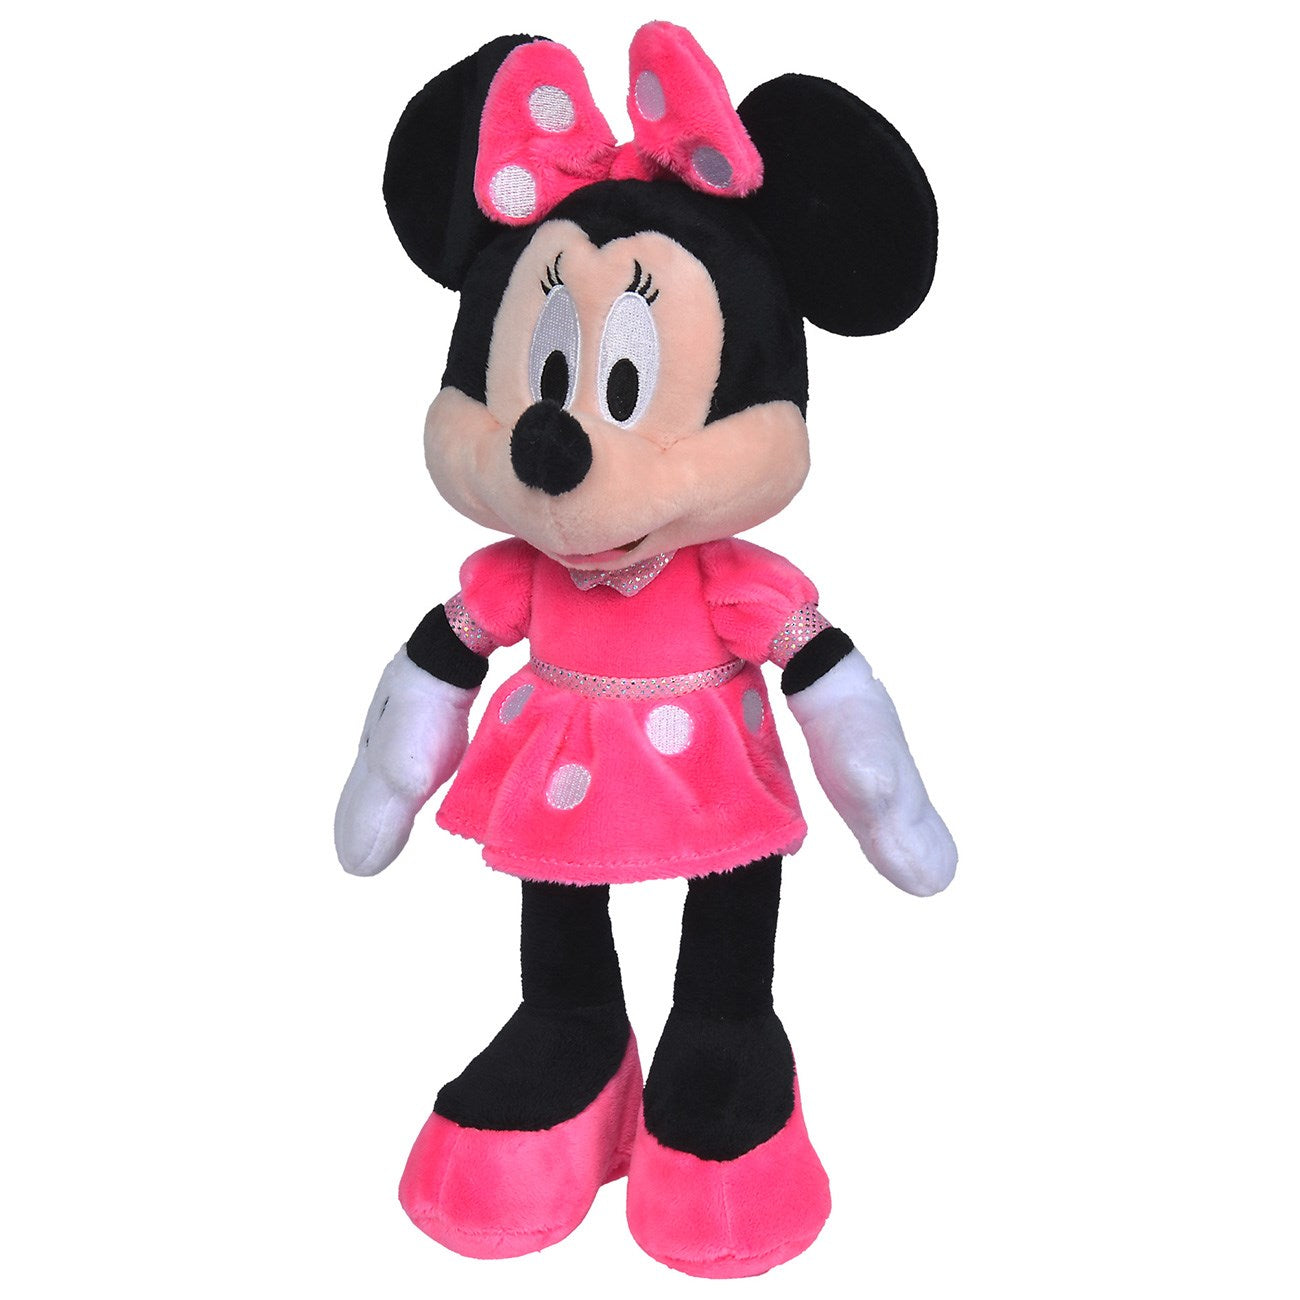 Simba Toys Minnie Mouse Teddy Bear 25cm